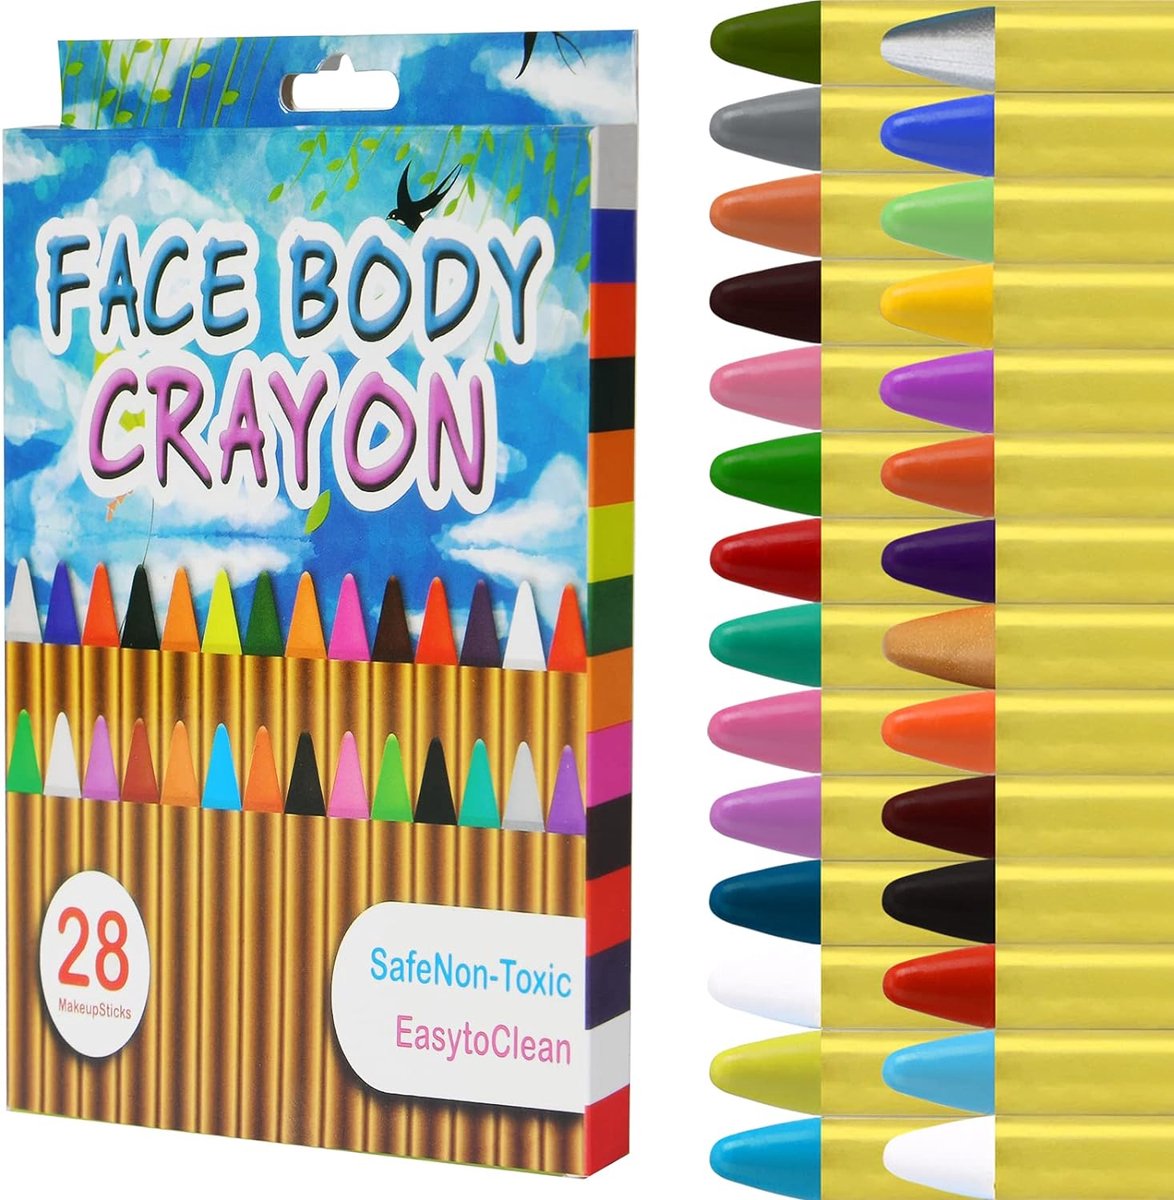 Peinture pour le visage pour enfants, 28 couleurs, crayons de